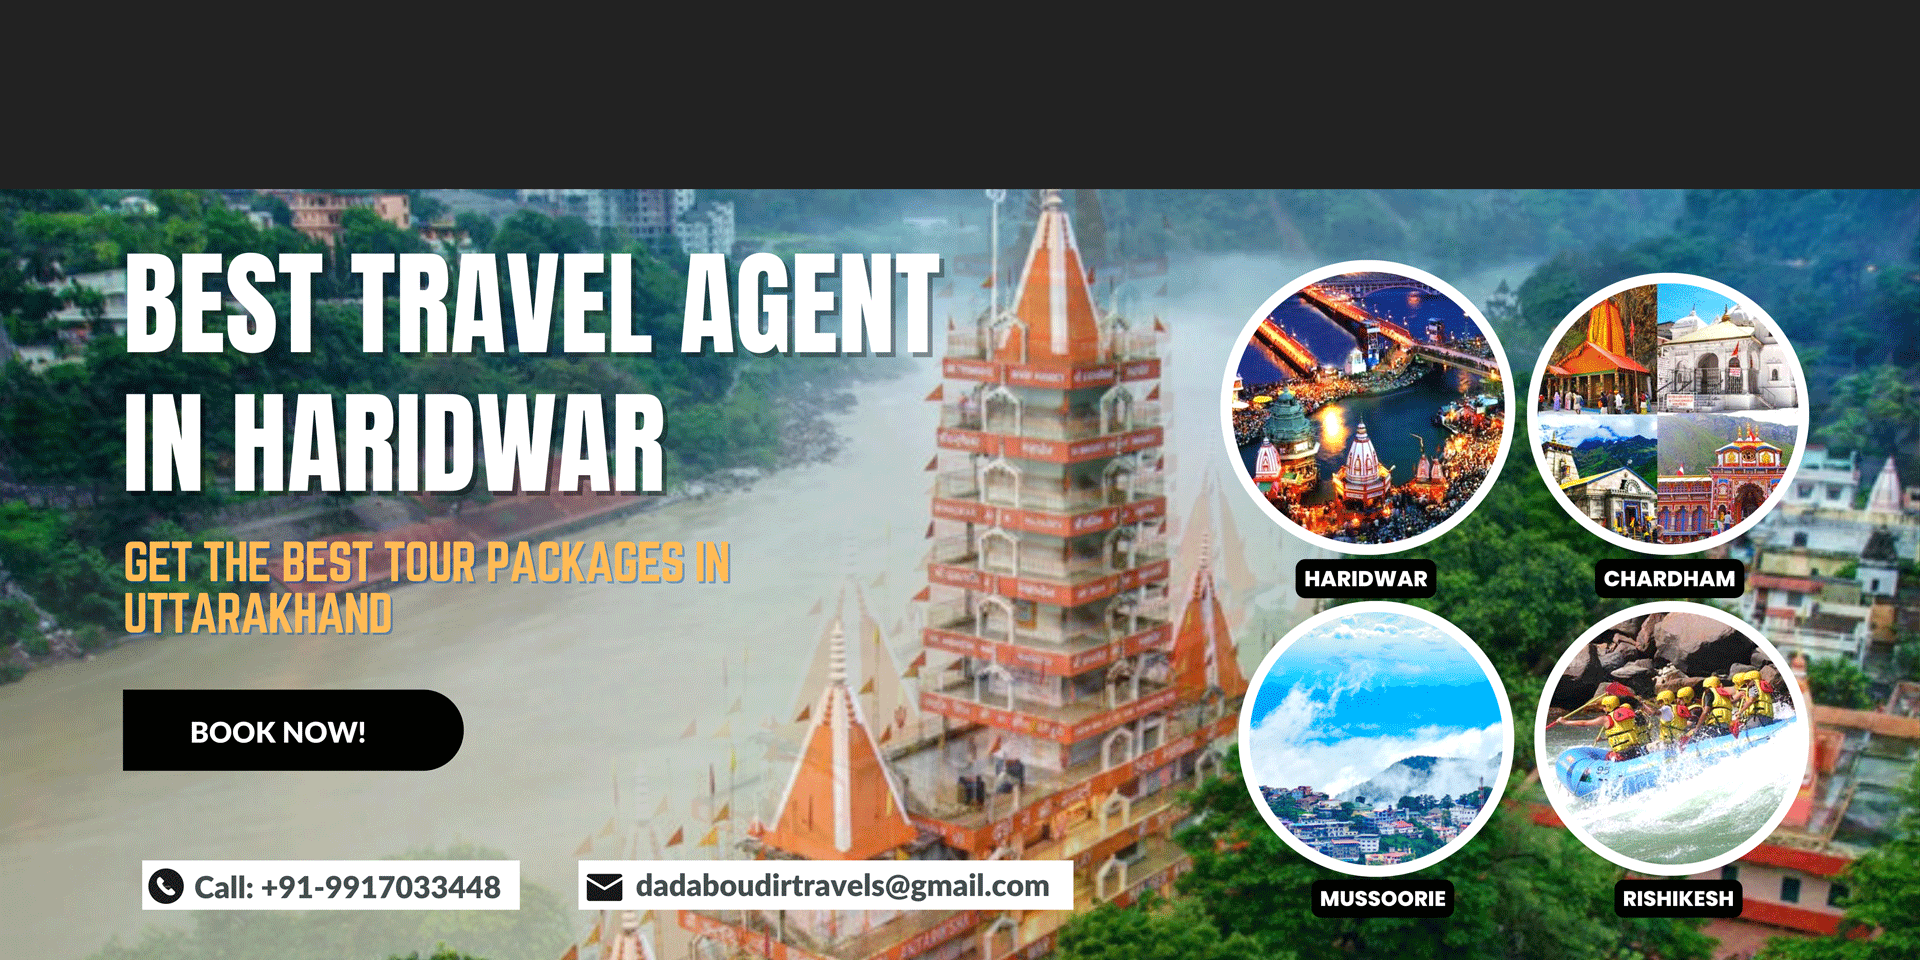 Best Travel Agent in Haridwar